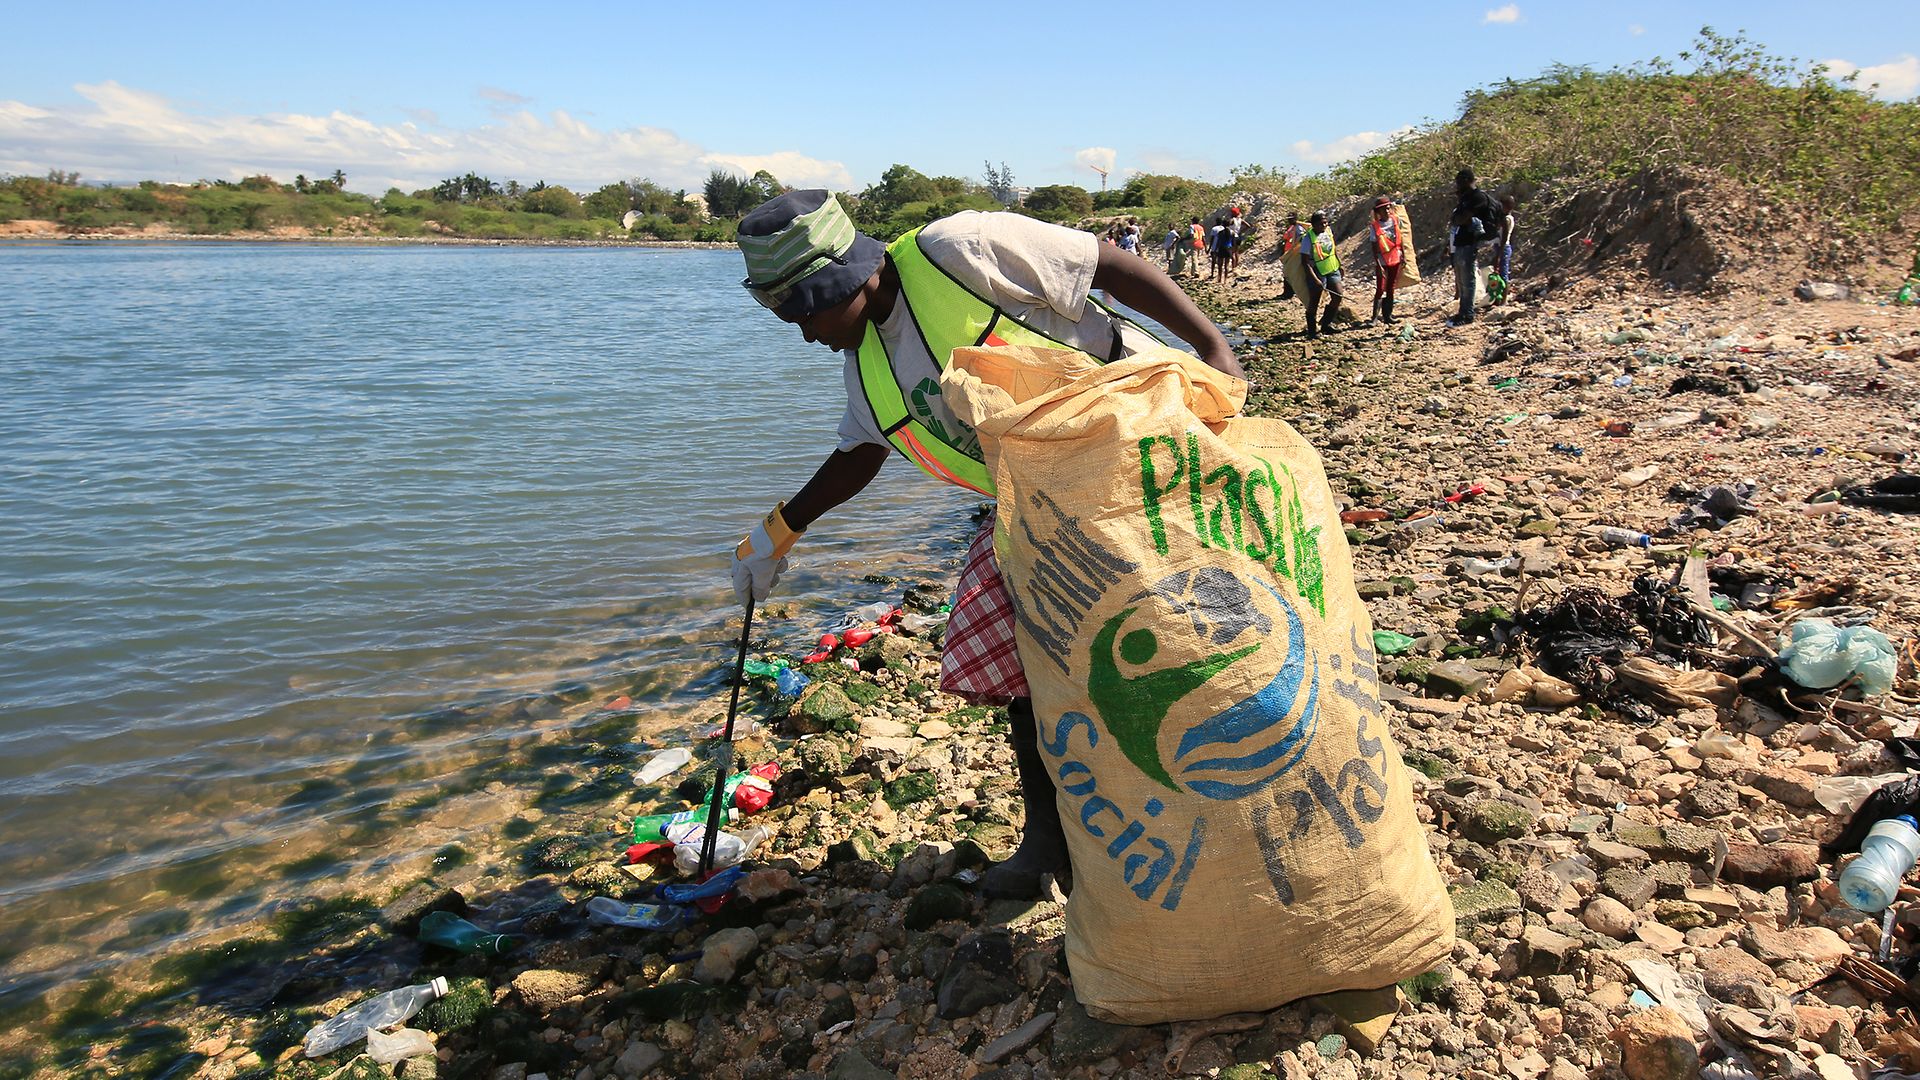 Gemeinsam mit dem Sozialunternehmen Plastic Bank hat Henkel sich zum Ziel gesetzt, die Menge an Plastikmüll in den Ozeanen zu bekämpfen und gleichzeitig Chancen für Menschen in Armut zu schaffen